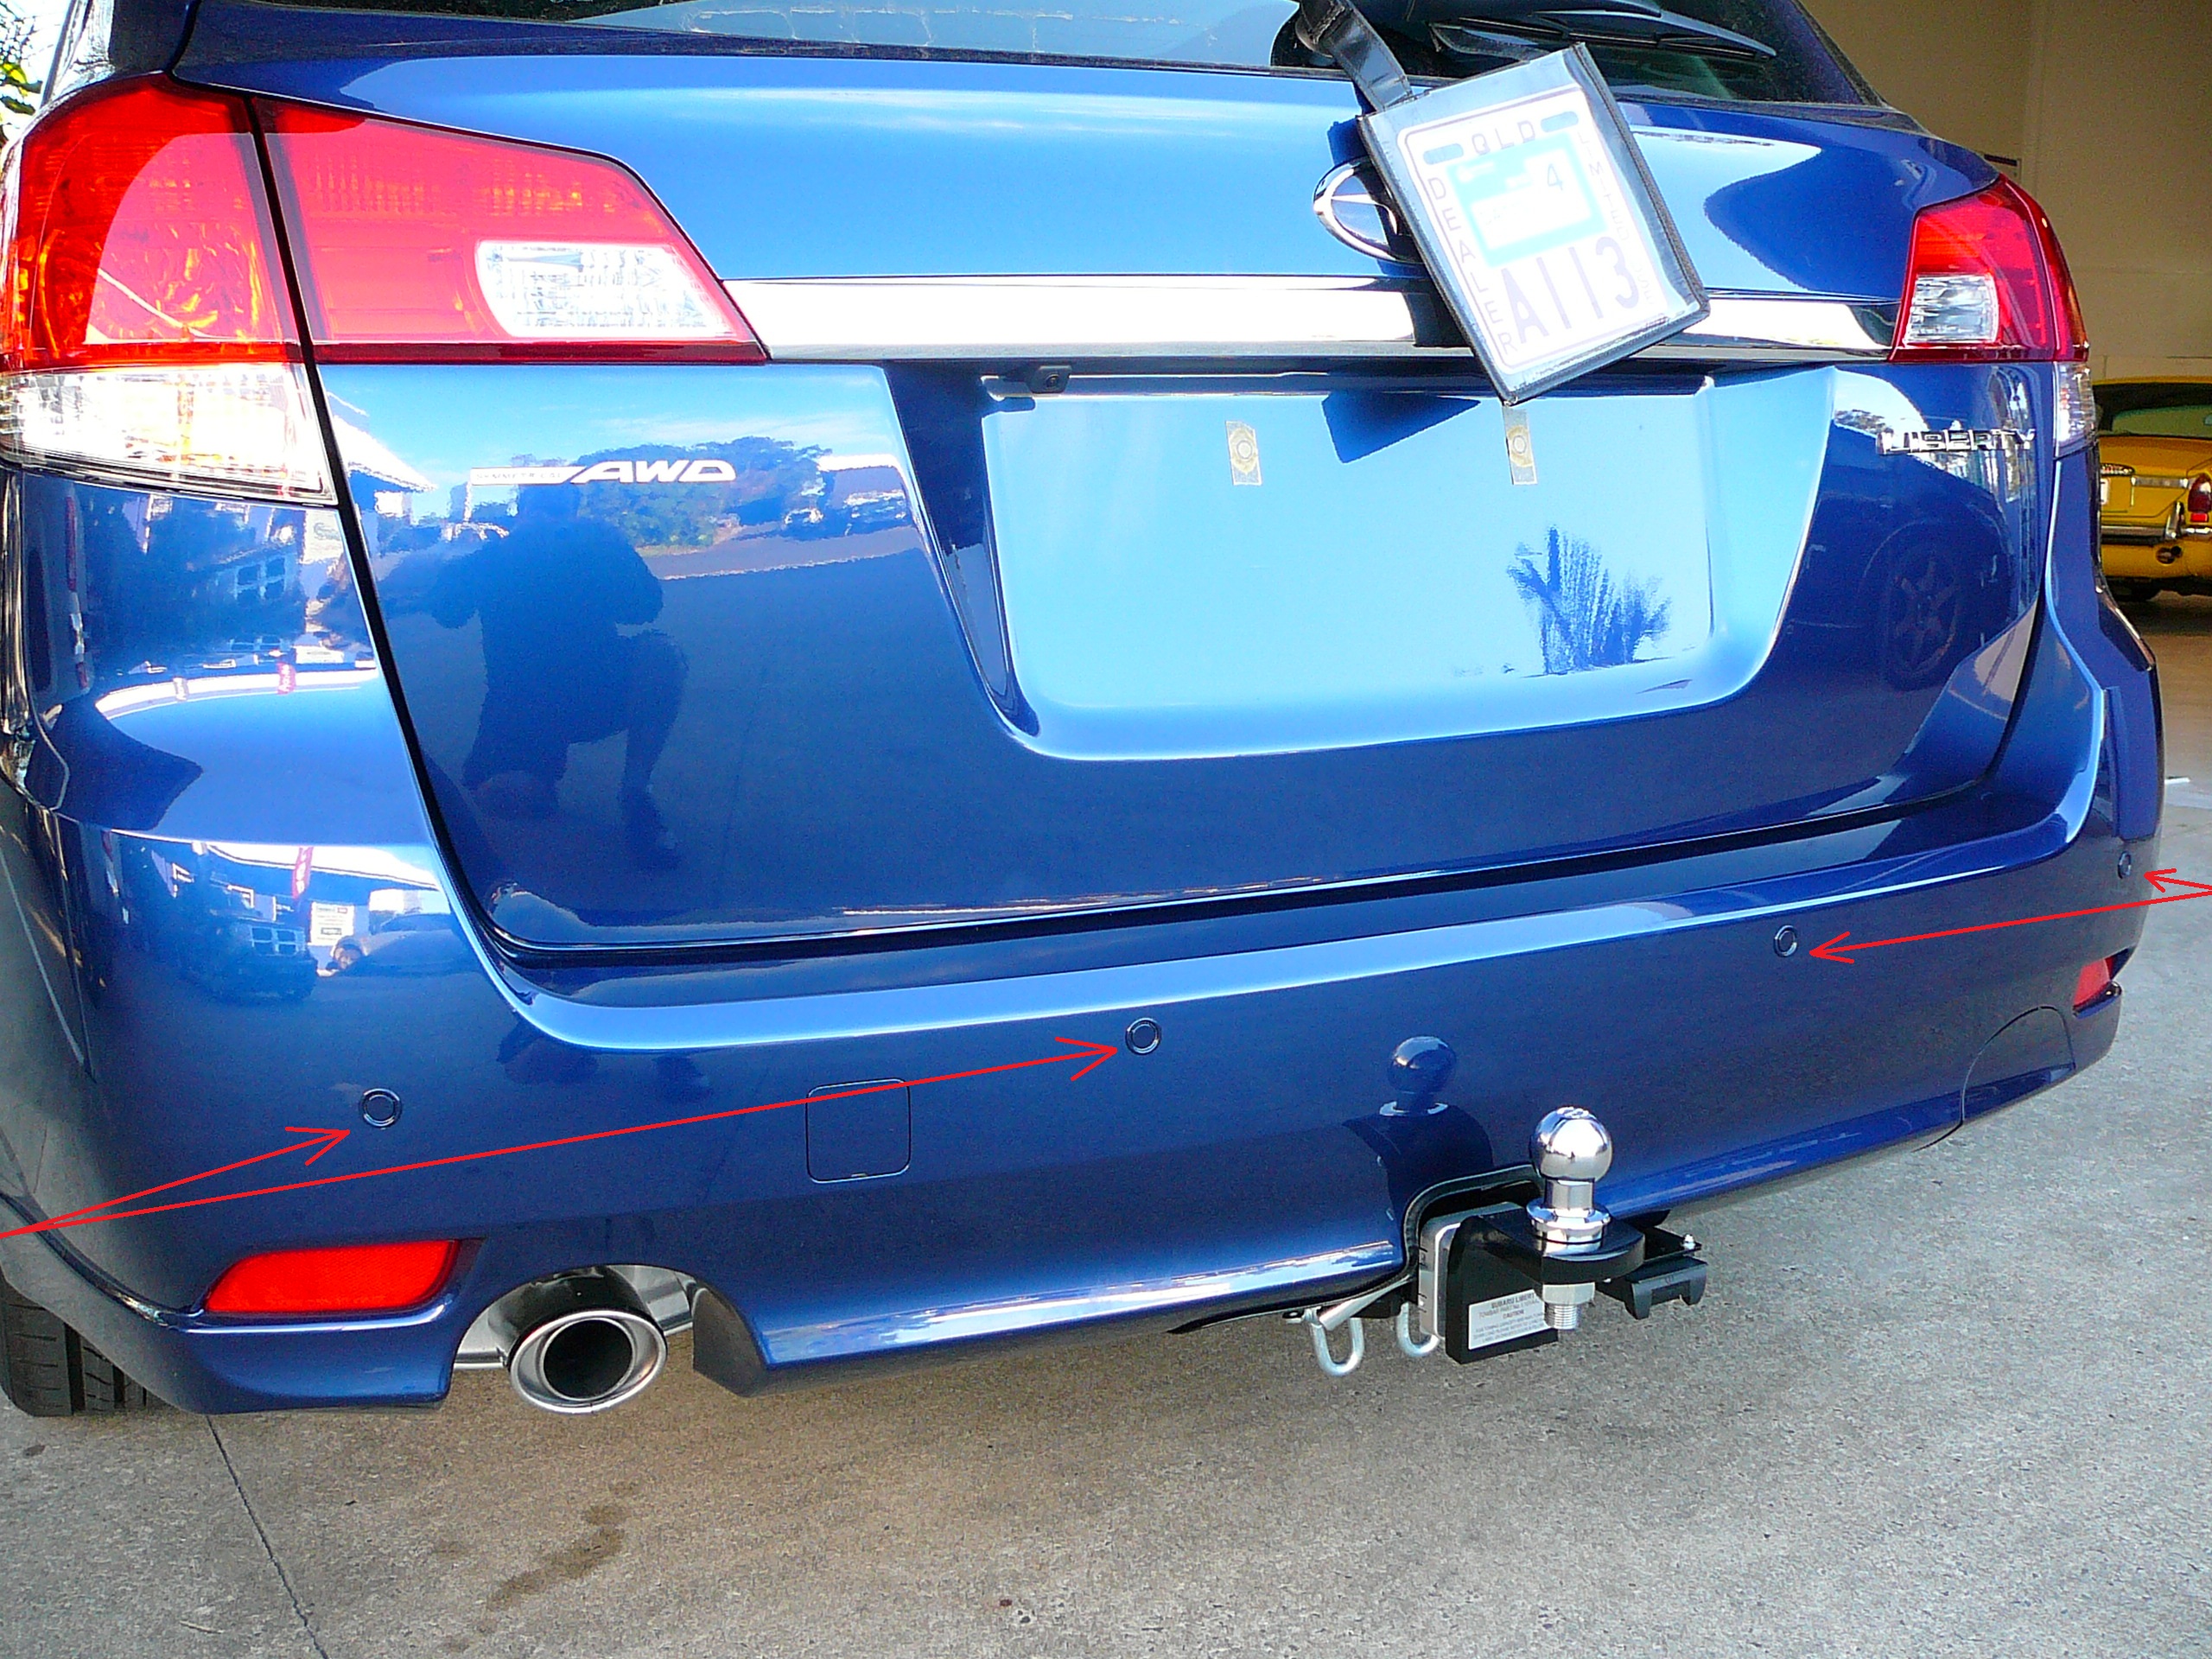 Subaru Liberty 2012 Front & Rear Parking Sensors